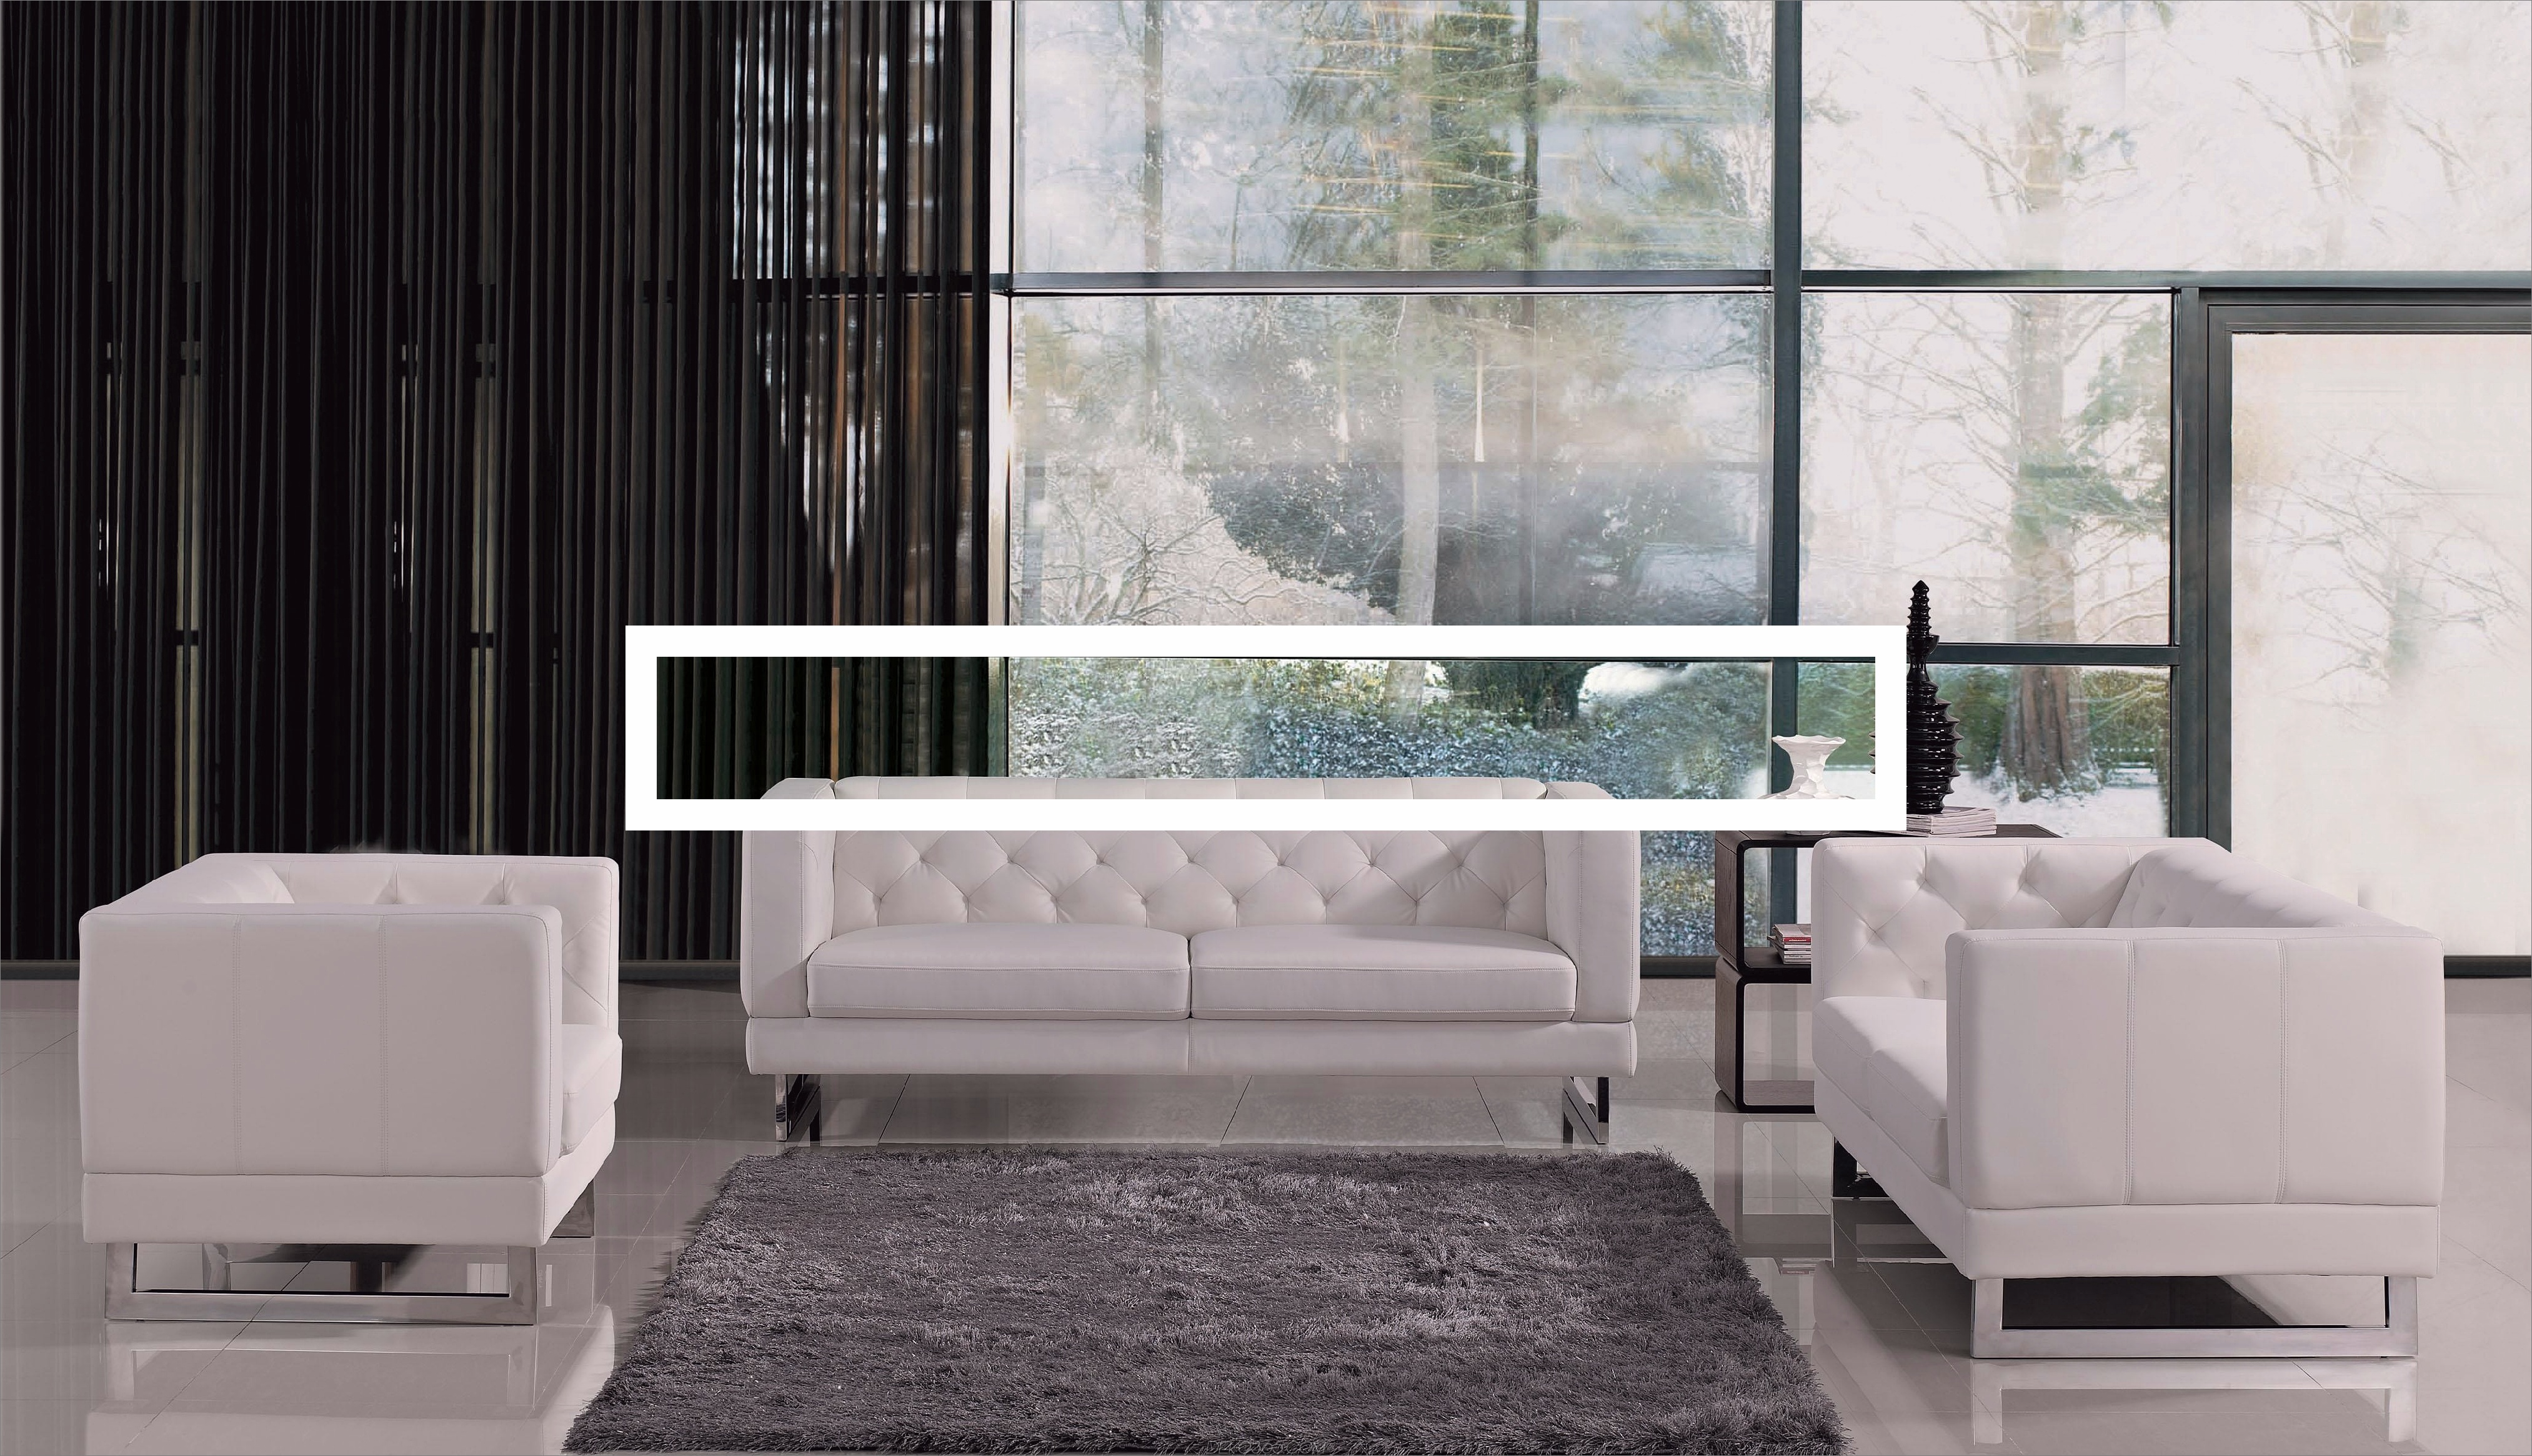 Weiße Sofa-Ideen für ein stilvolles Wohnzimmer_5c588234a8208.jpg